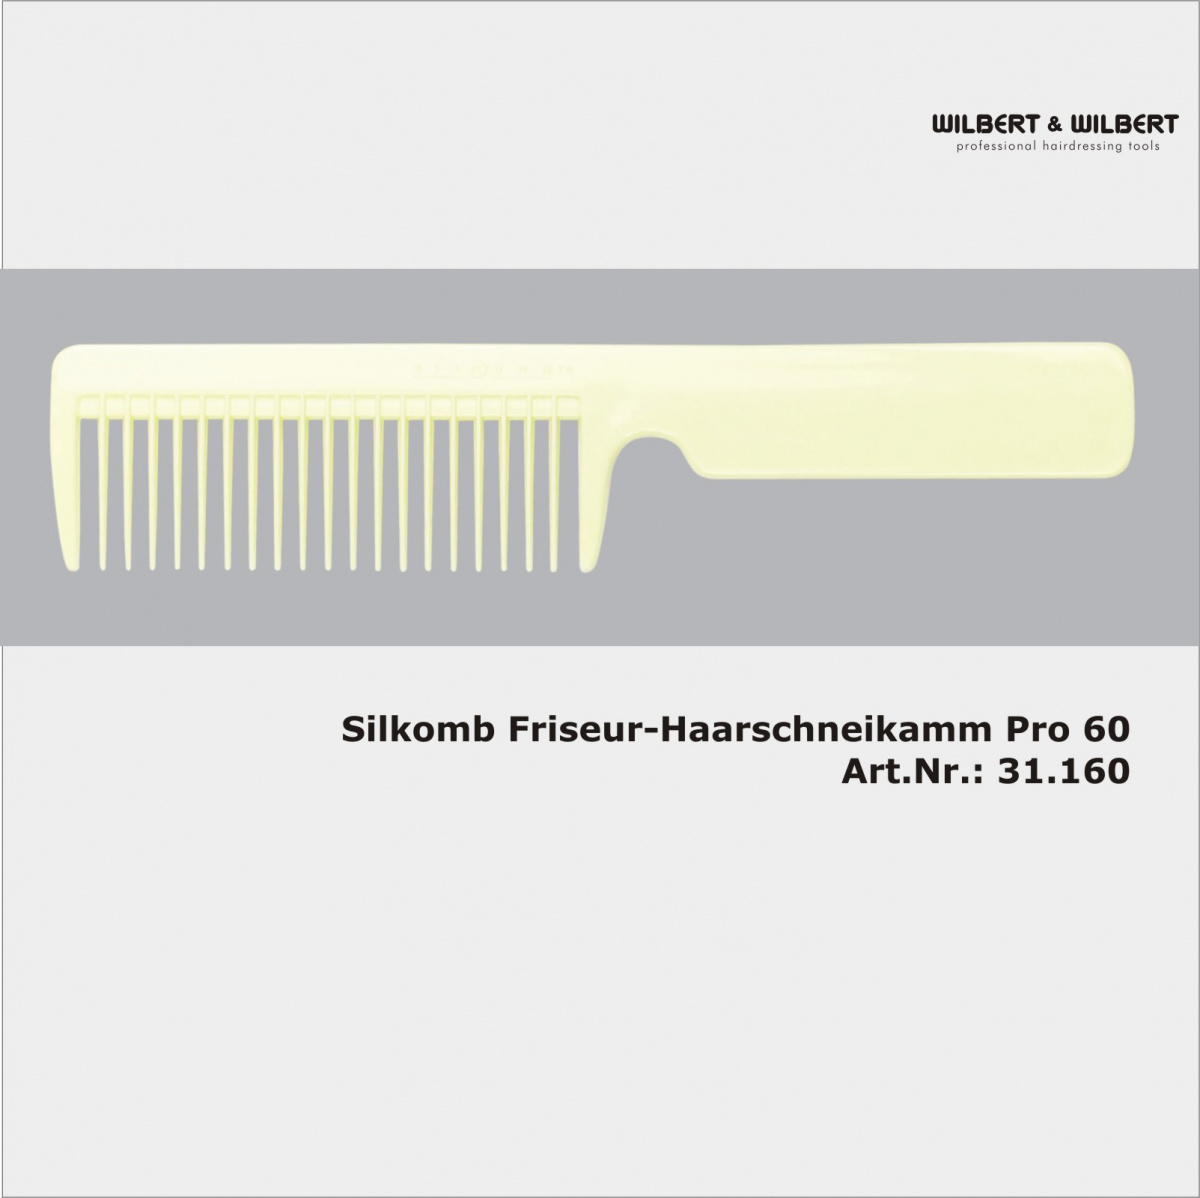 SILKOMB`Silikon-Griffkamm PRO60  Art.Nr.:31.160